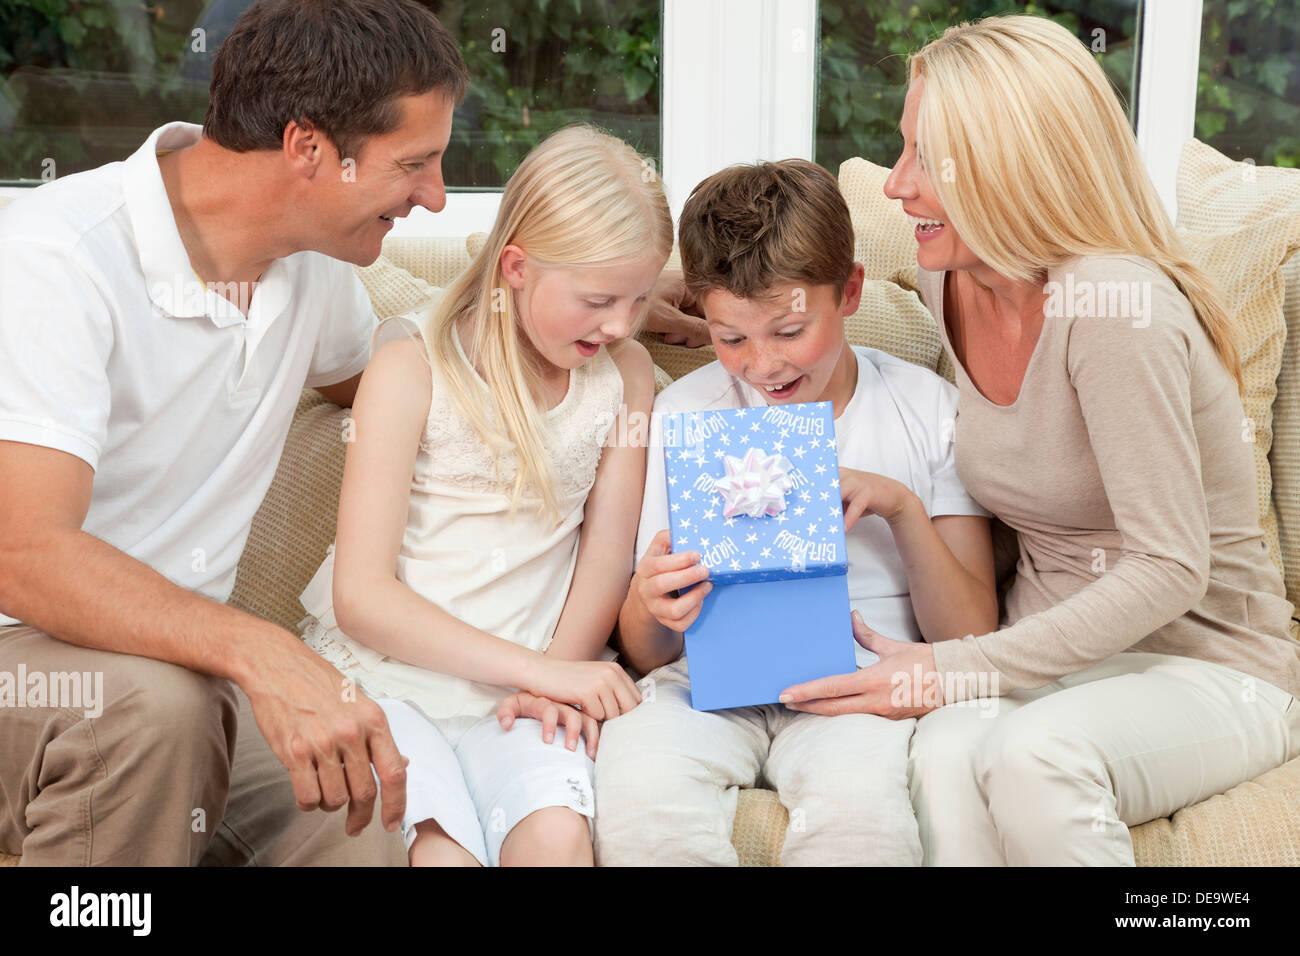 glückliche Familie Mutter Vater Sohn und Tochter sitzen auf einem Sofa zu Hause das junge Kind ist ein Geburtstagsgeschenk in einer blauen Schachtel öffnen Stockfoto